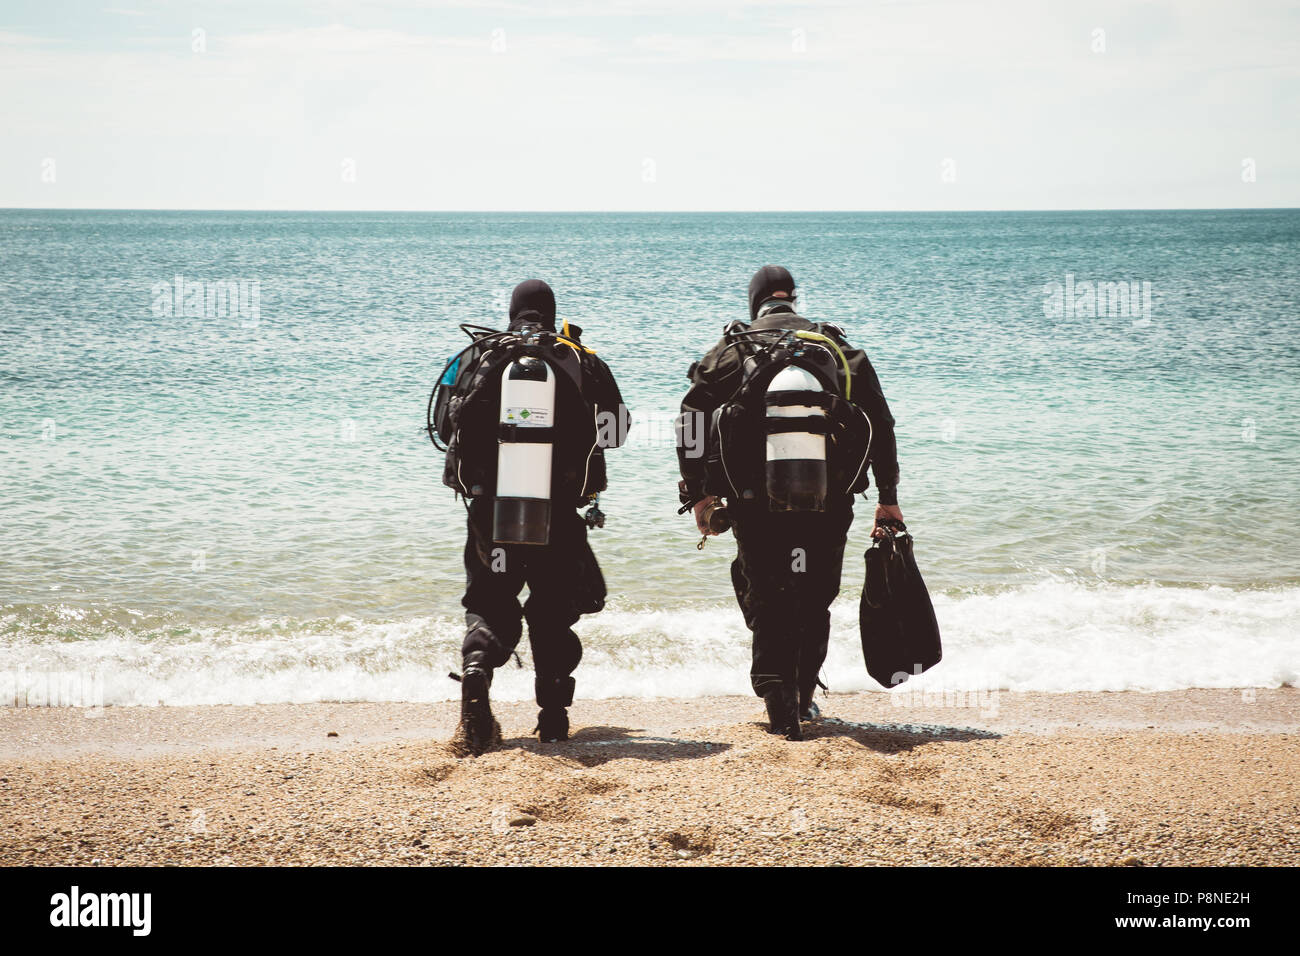 Une vue arrière de deux plongeurs en eau profonde dans l'océan à pied d'une plage sur une plongée en eau profonde Banque D'Images